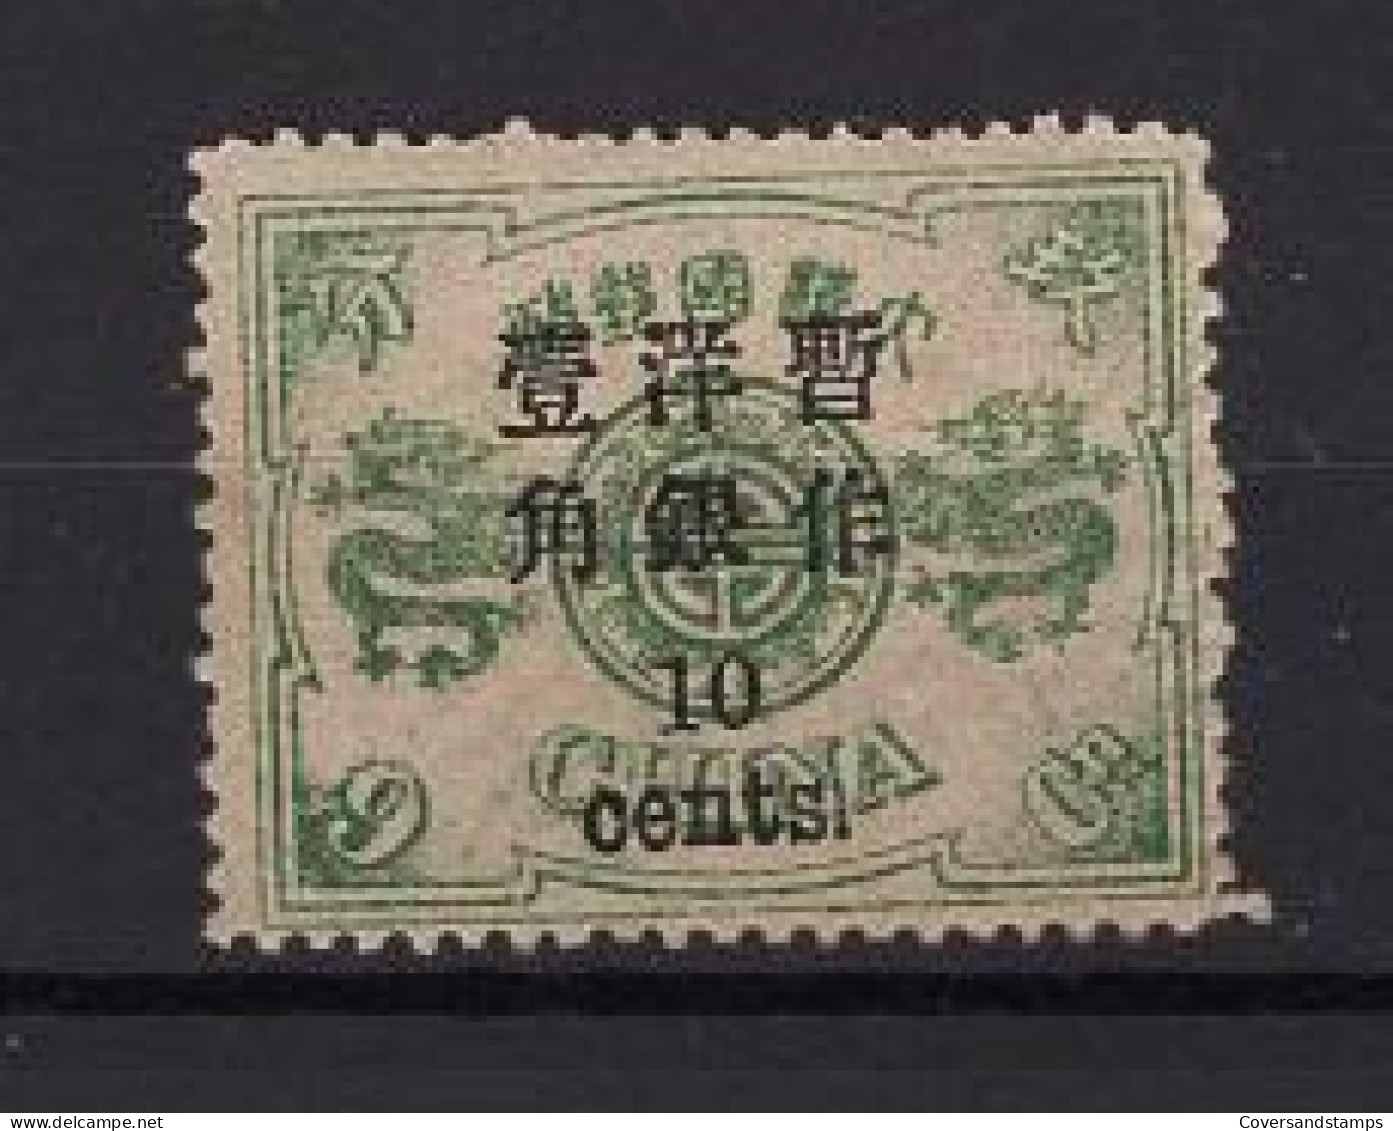  China - Sc 35 (1879)  * MH - Ungebraucht